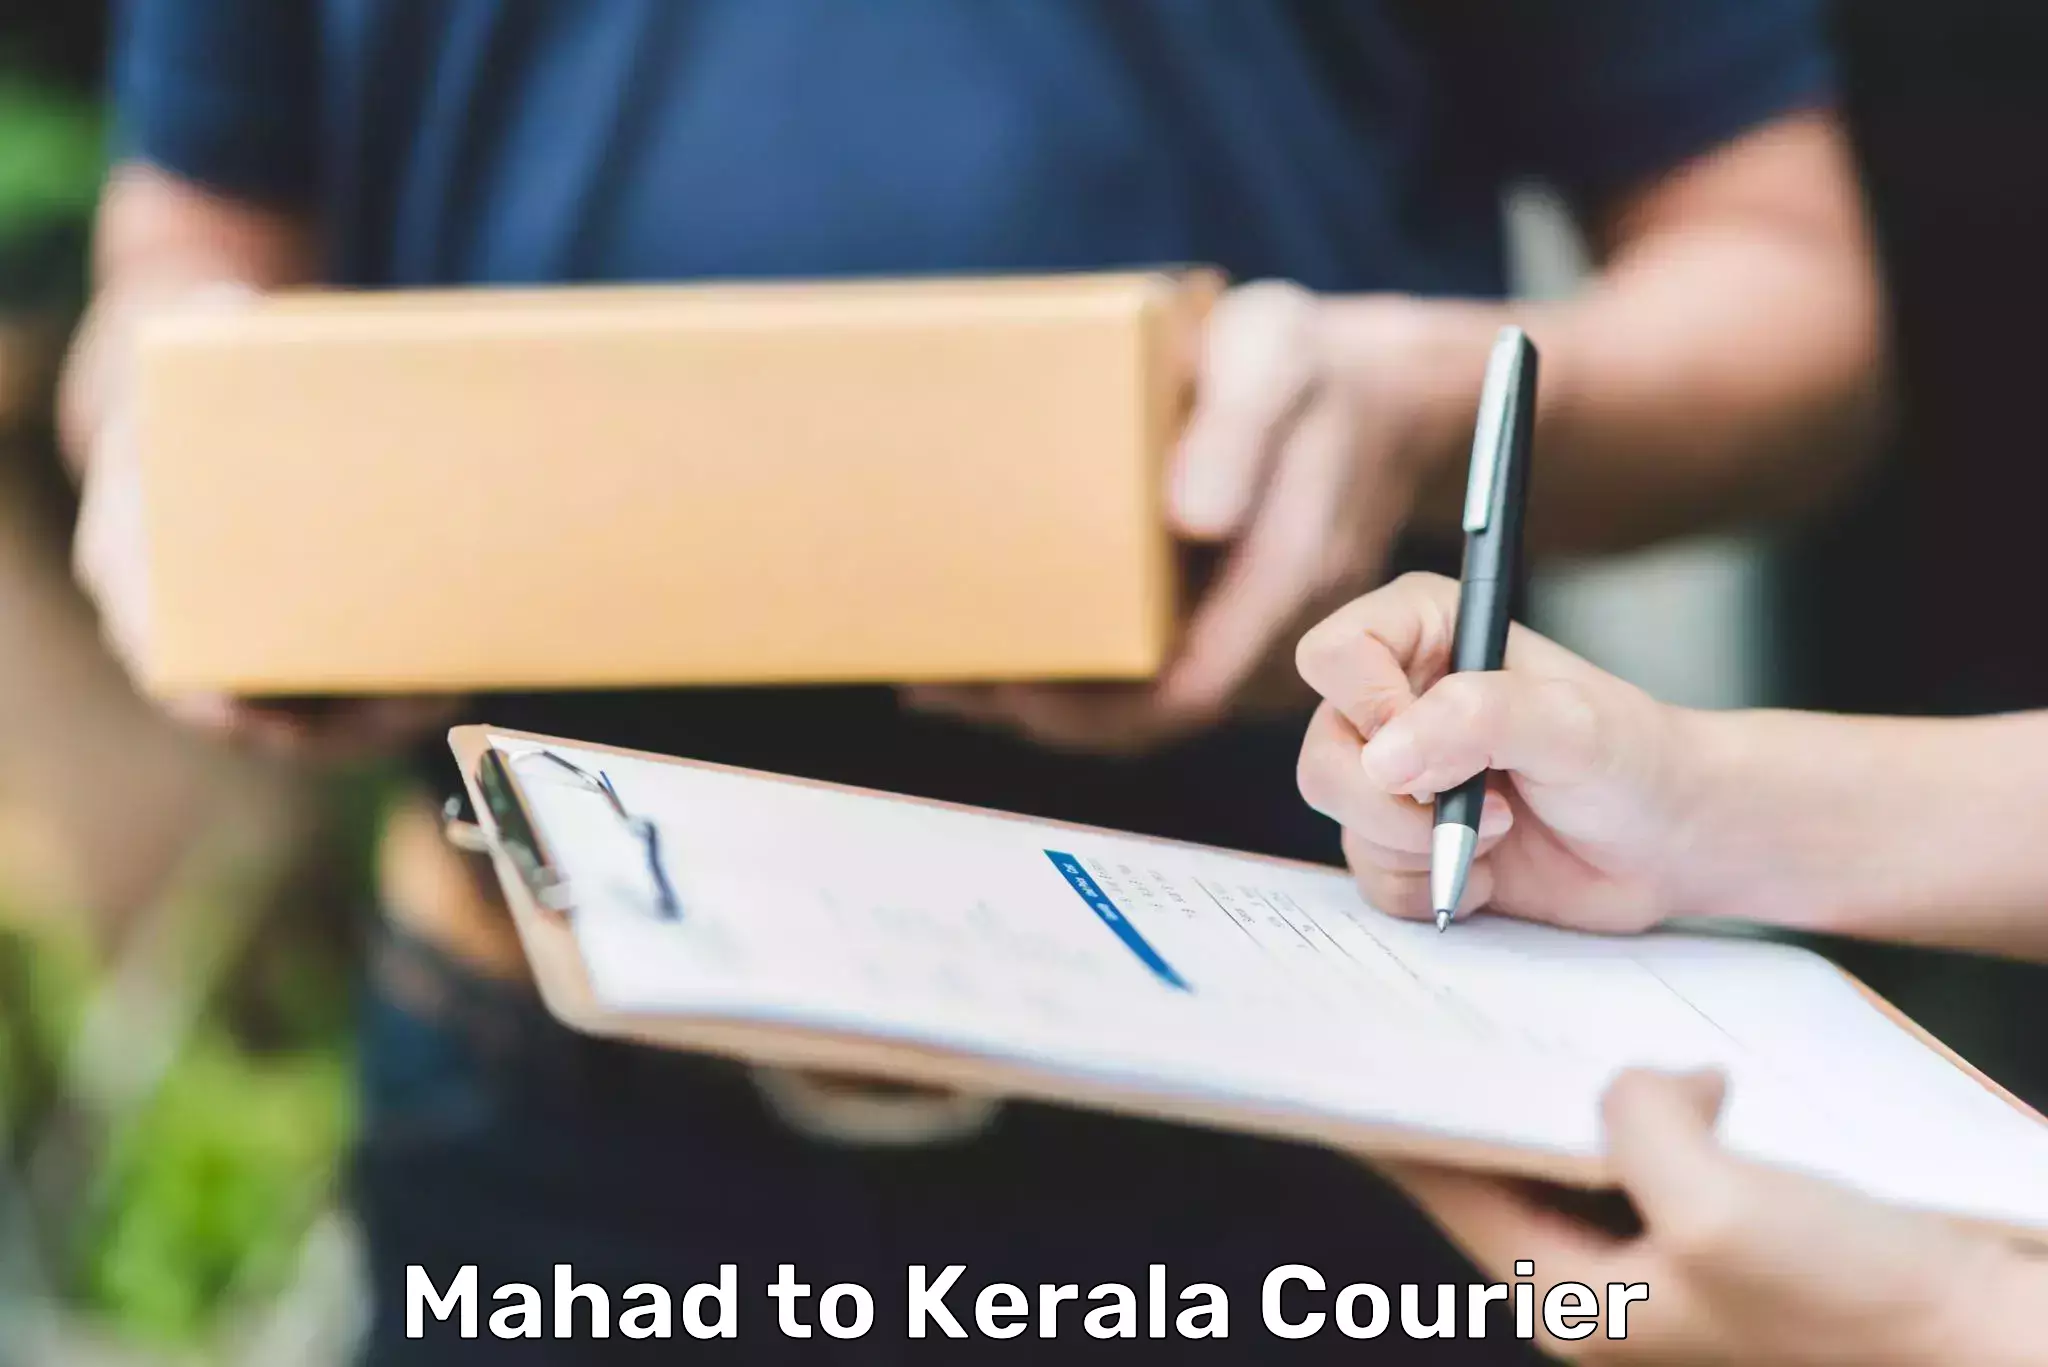 Express package handling Mahad to Kerala